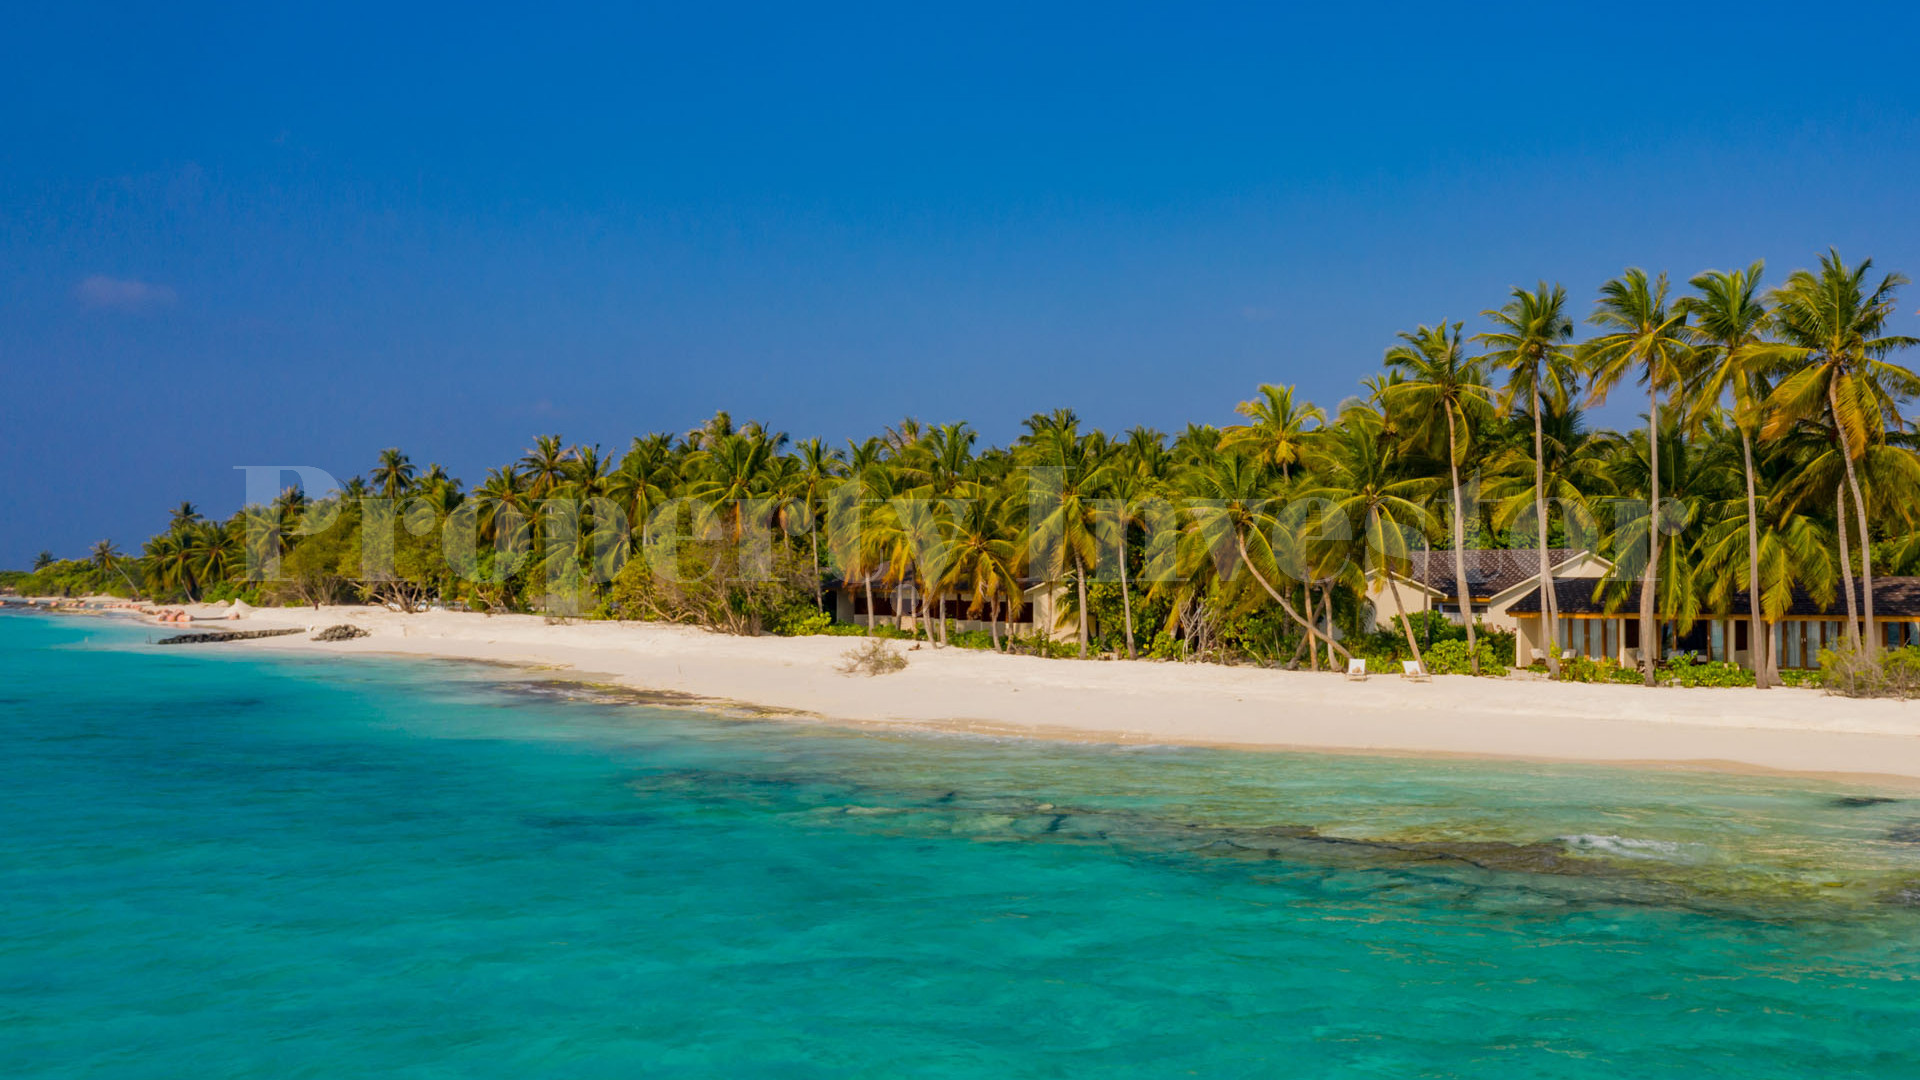 Luxury 60 Villa Island Resort for Sale in the Maldives